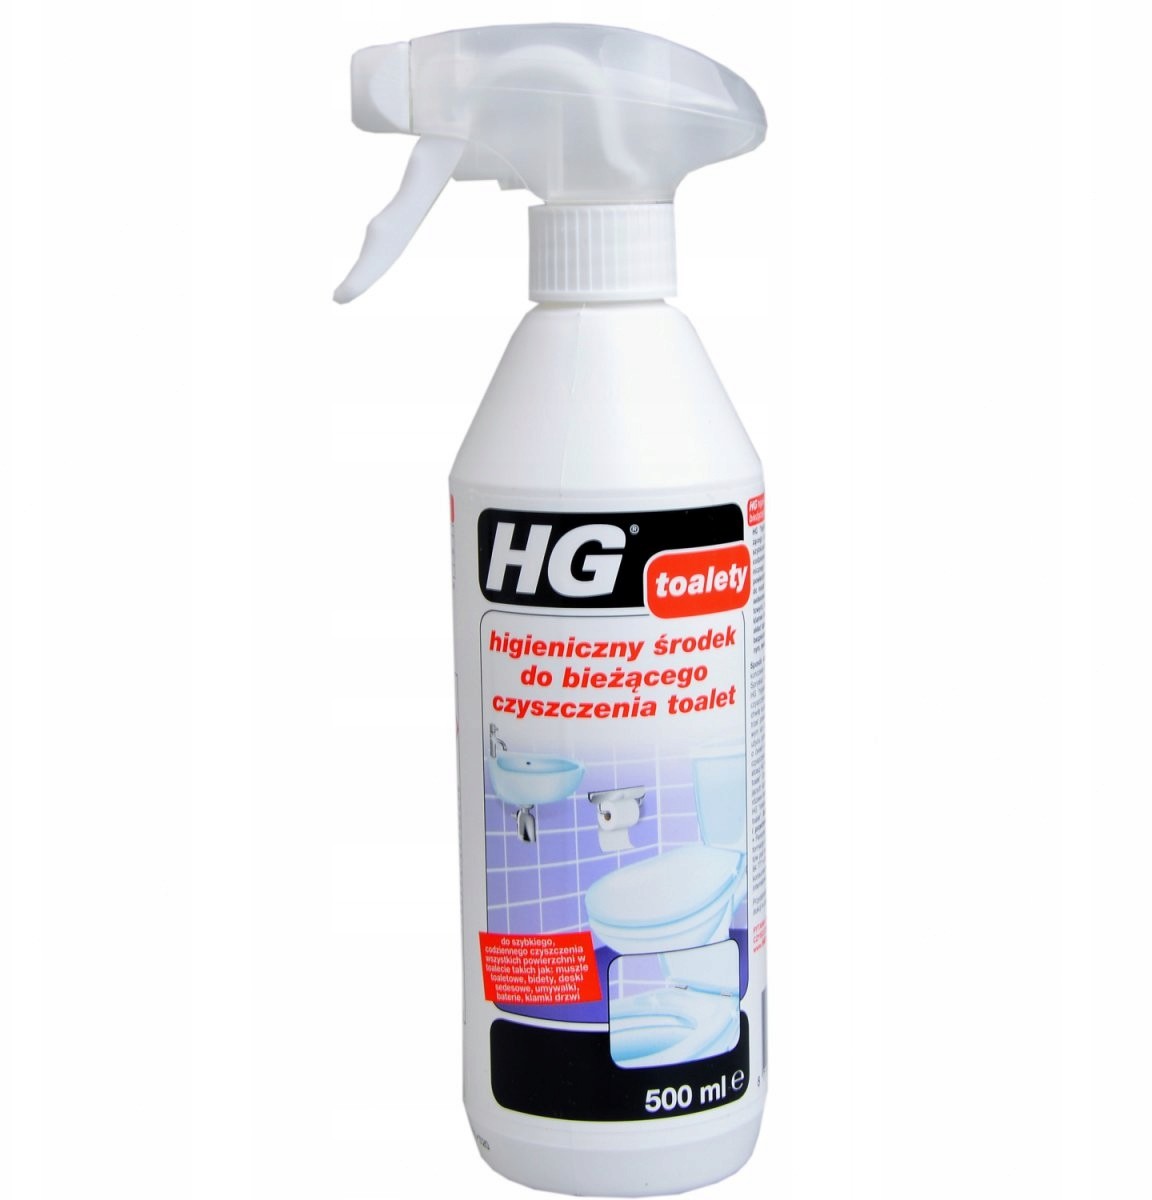 HG Higieniczny płyn do czyszczenia toalet